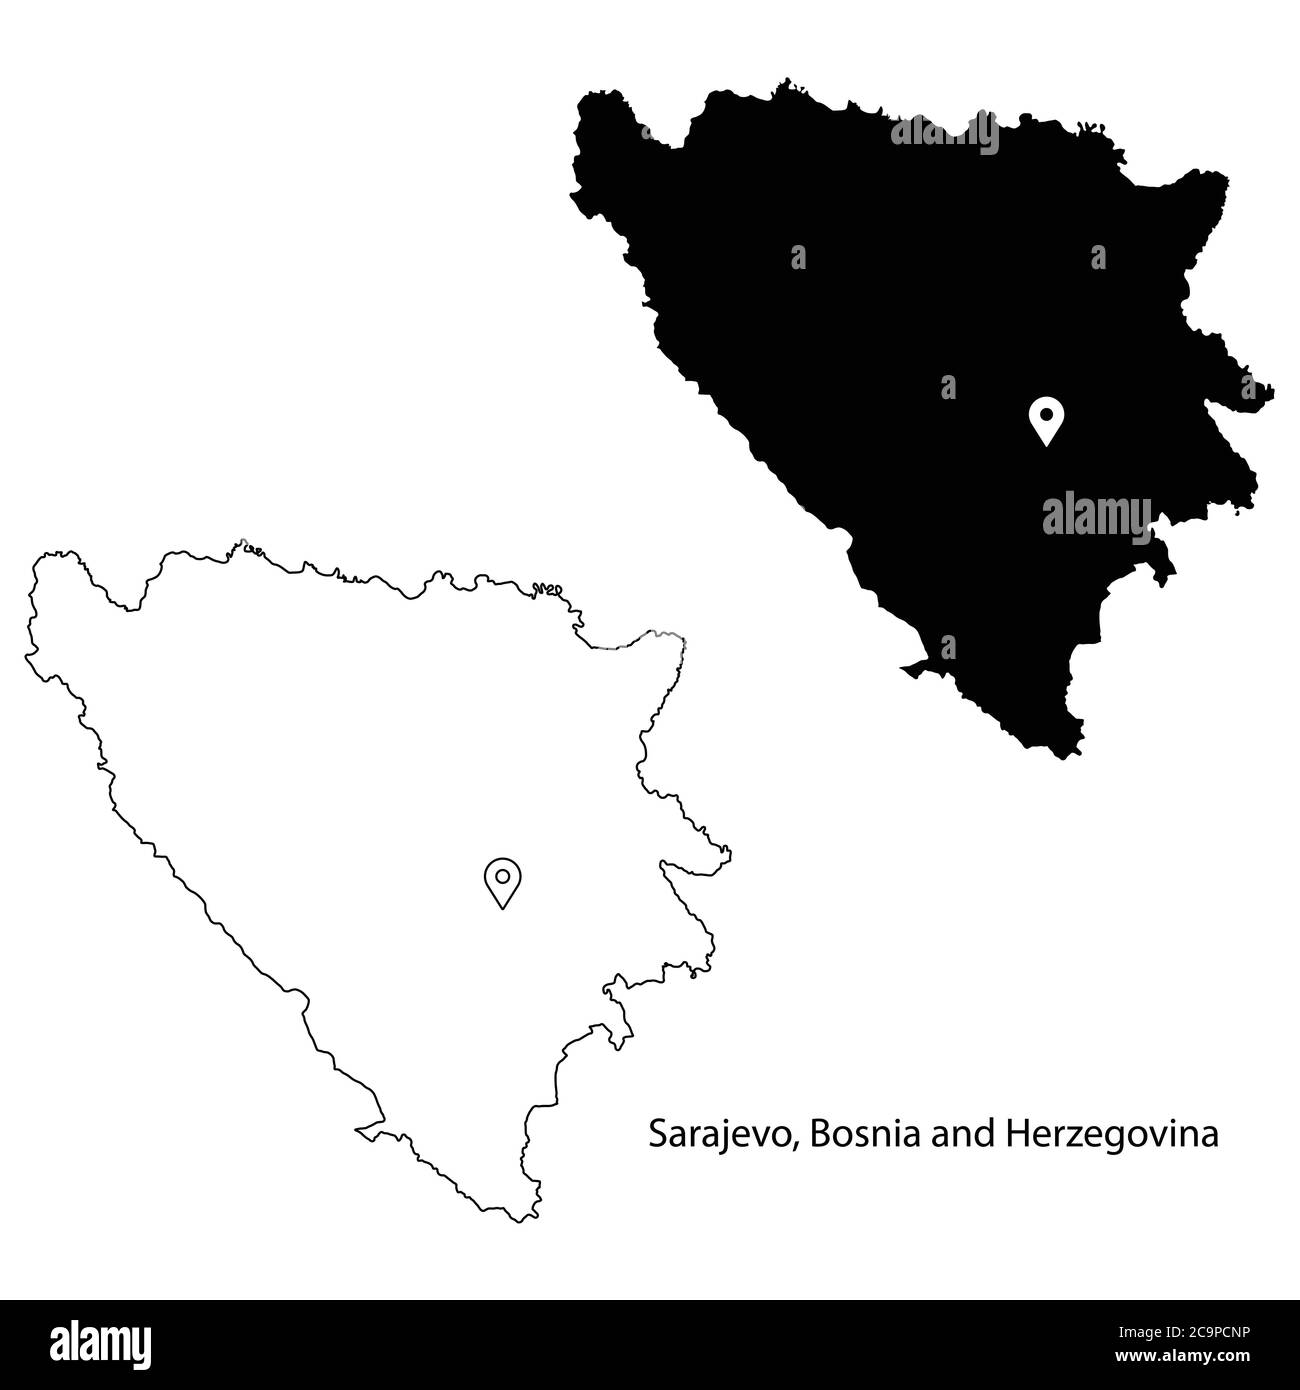 Sarajevo Bosnie-Herzégovine. Carte détaillée du pays avec broche d'emplacement sur Capital City. Silhouette noire et cartes vectorielles isolées sur fond blanc Illustration de Vecteur